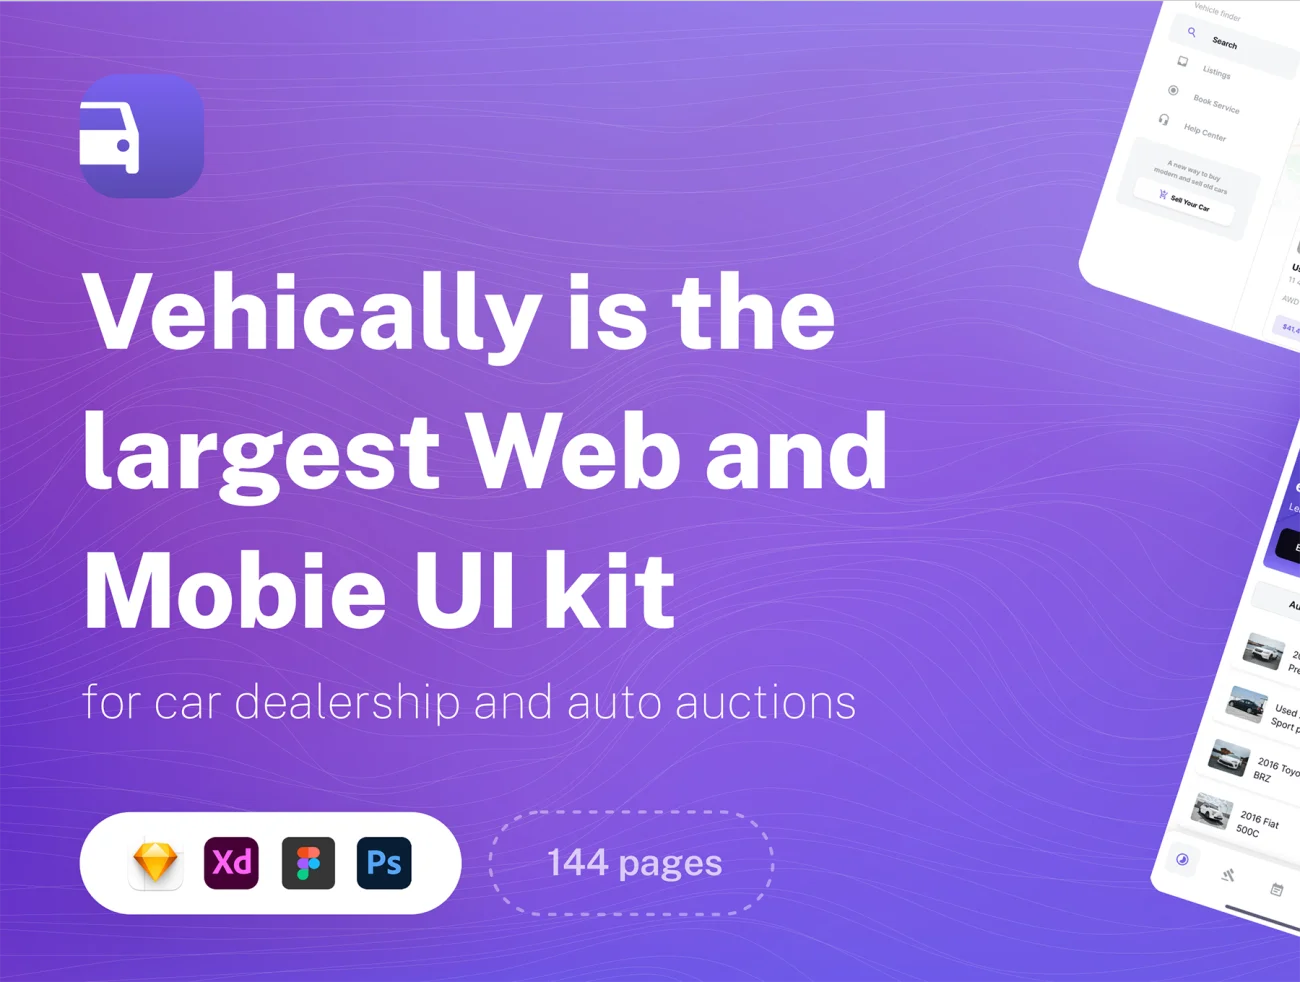 71屏汽车销售拍卖平台web无线UI设计套件 Vehically – Web and Mobile UI kit插图1